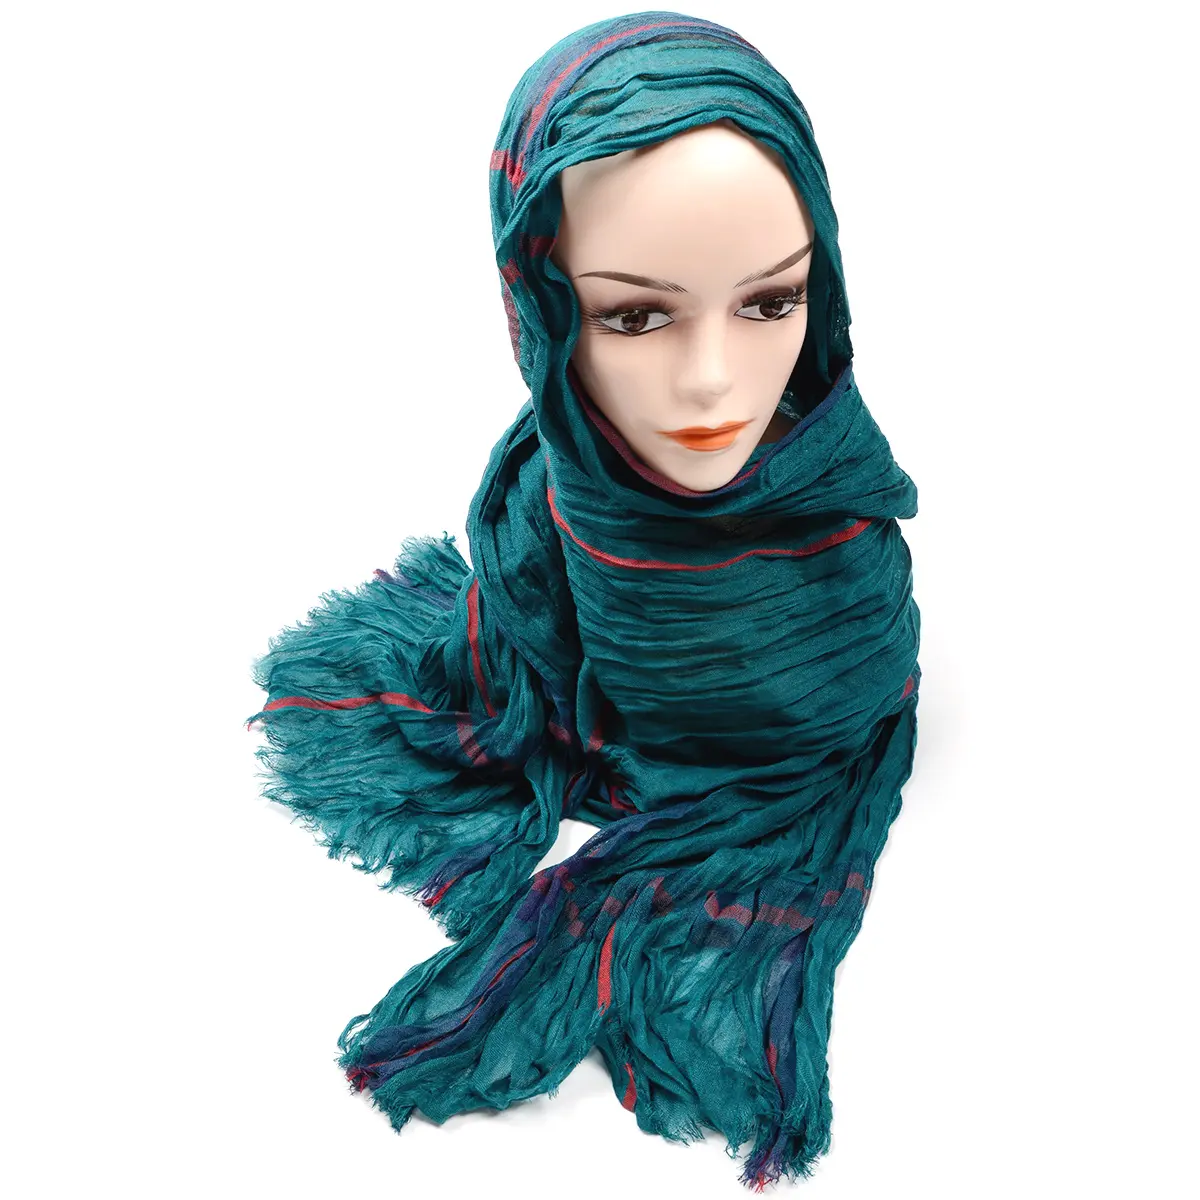 Hamocigia גבירותיי 100% ויסקוזה בד המוסלמי חיג 'אב אופנה צעיף מלזיה הערבי